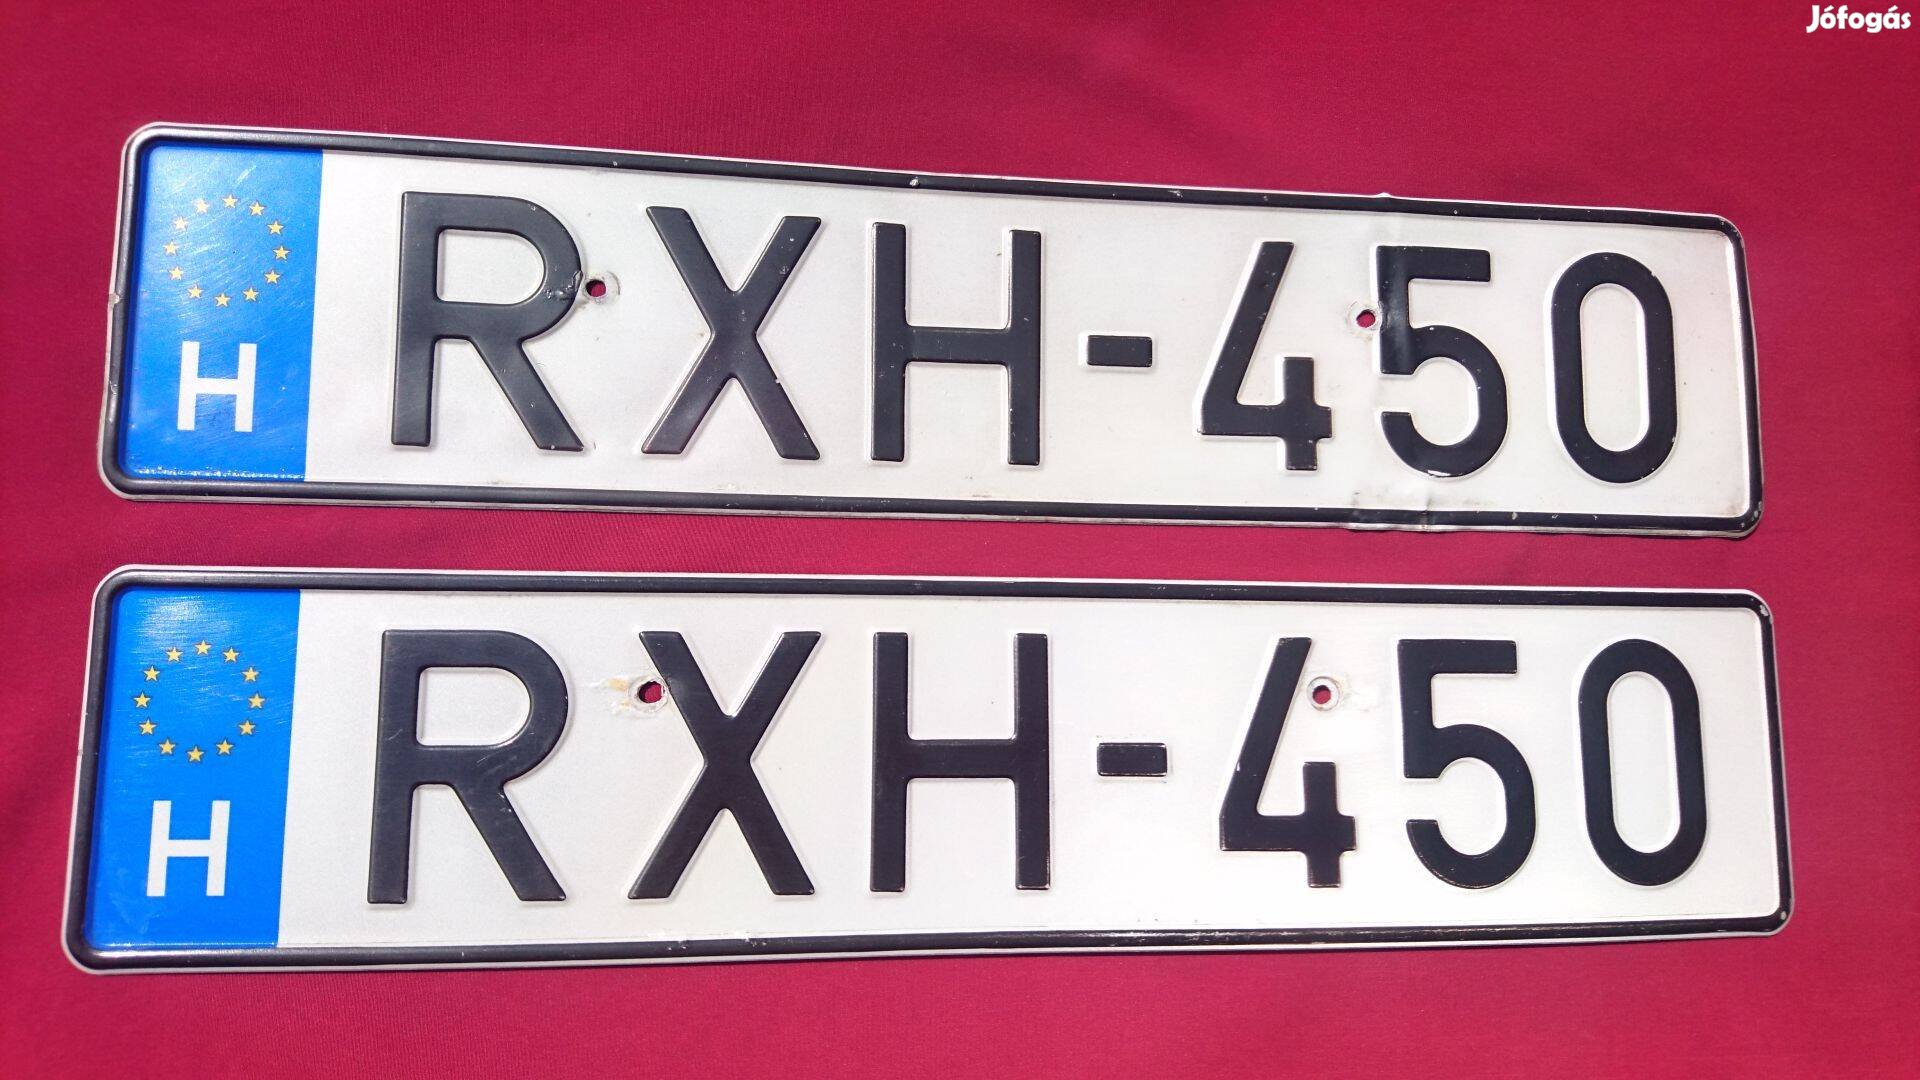 Rxh_450 Lexus RX450h egyéni forgalmi rendszám eladó